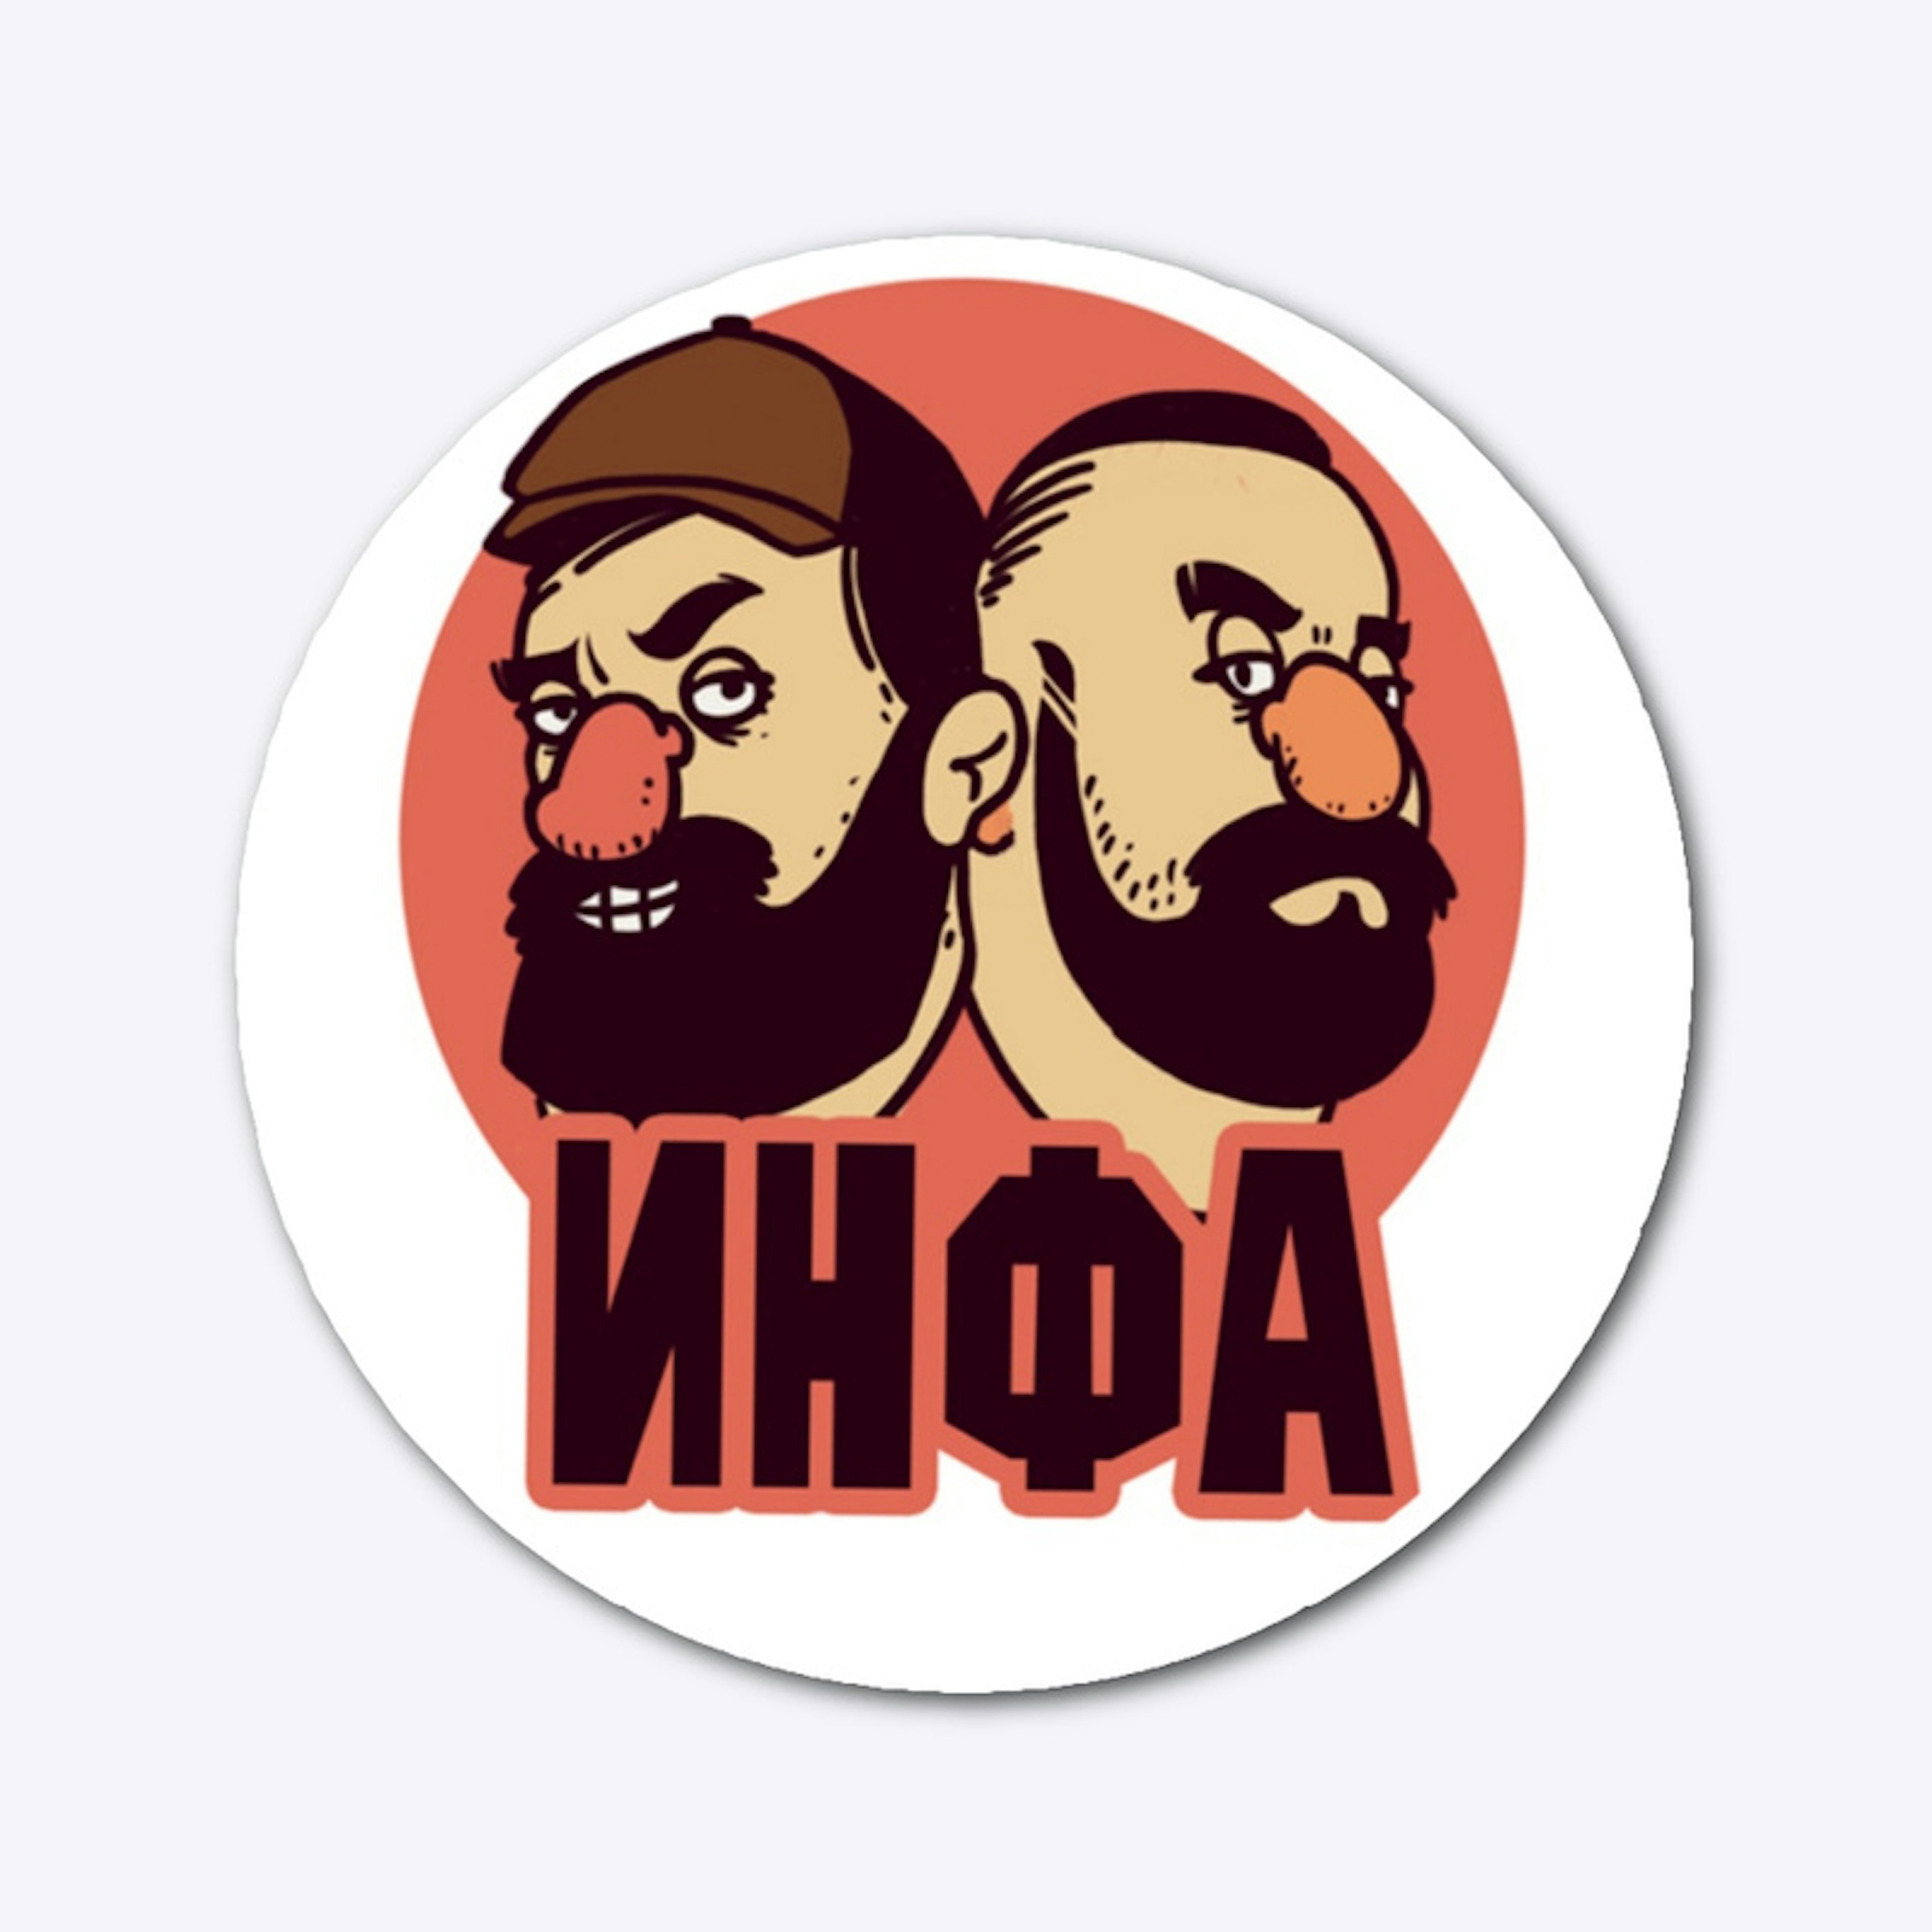 Sticker Infa logo